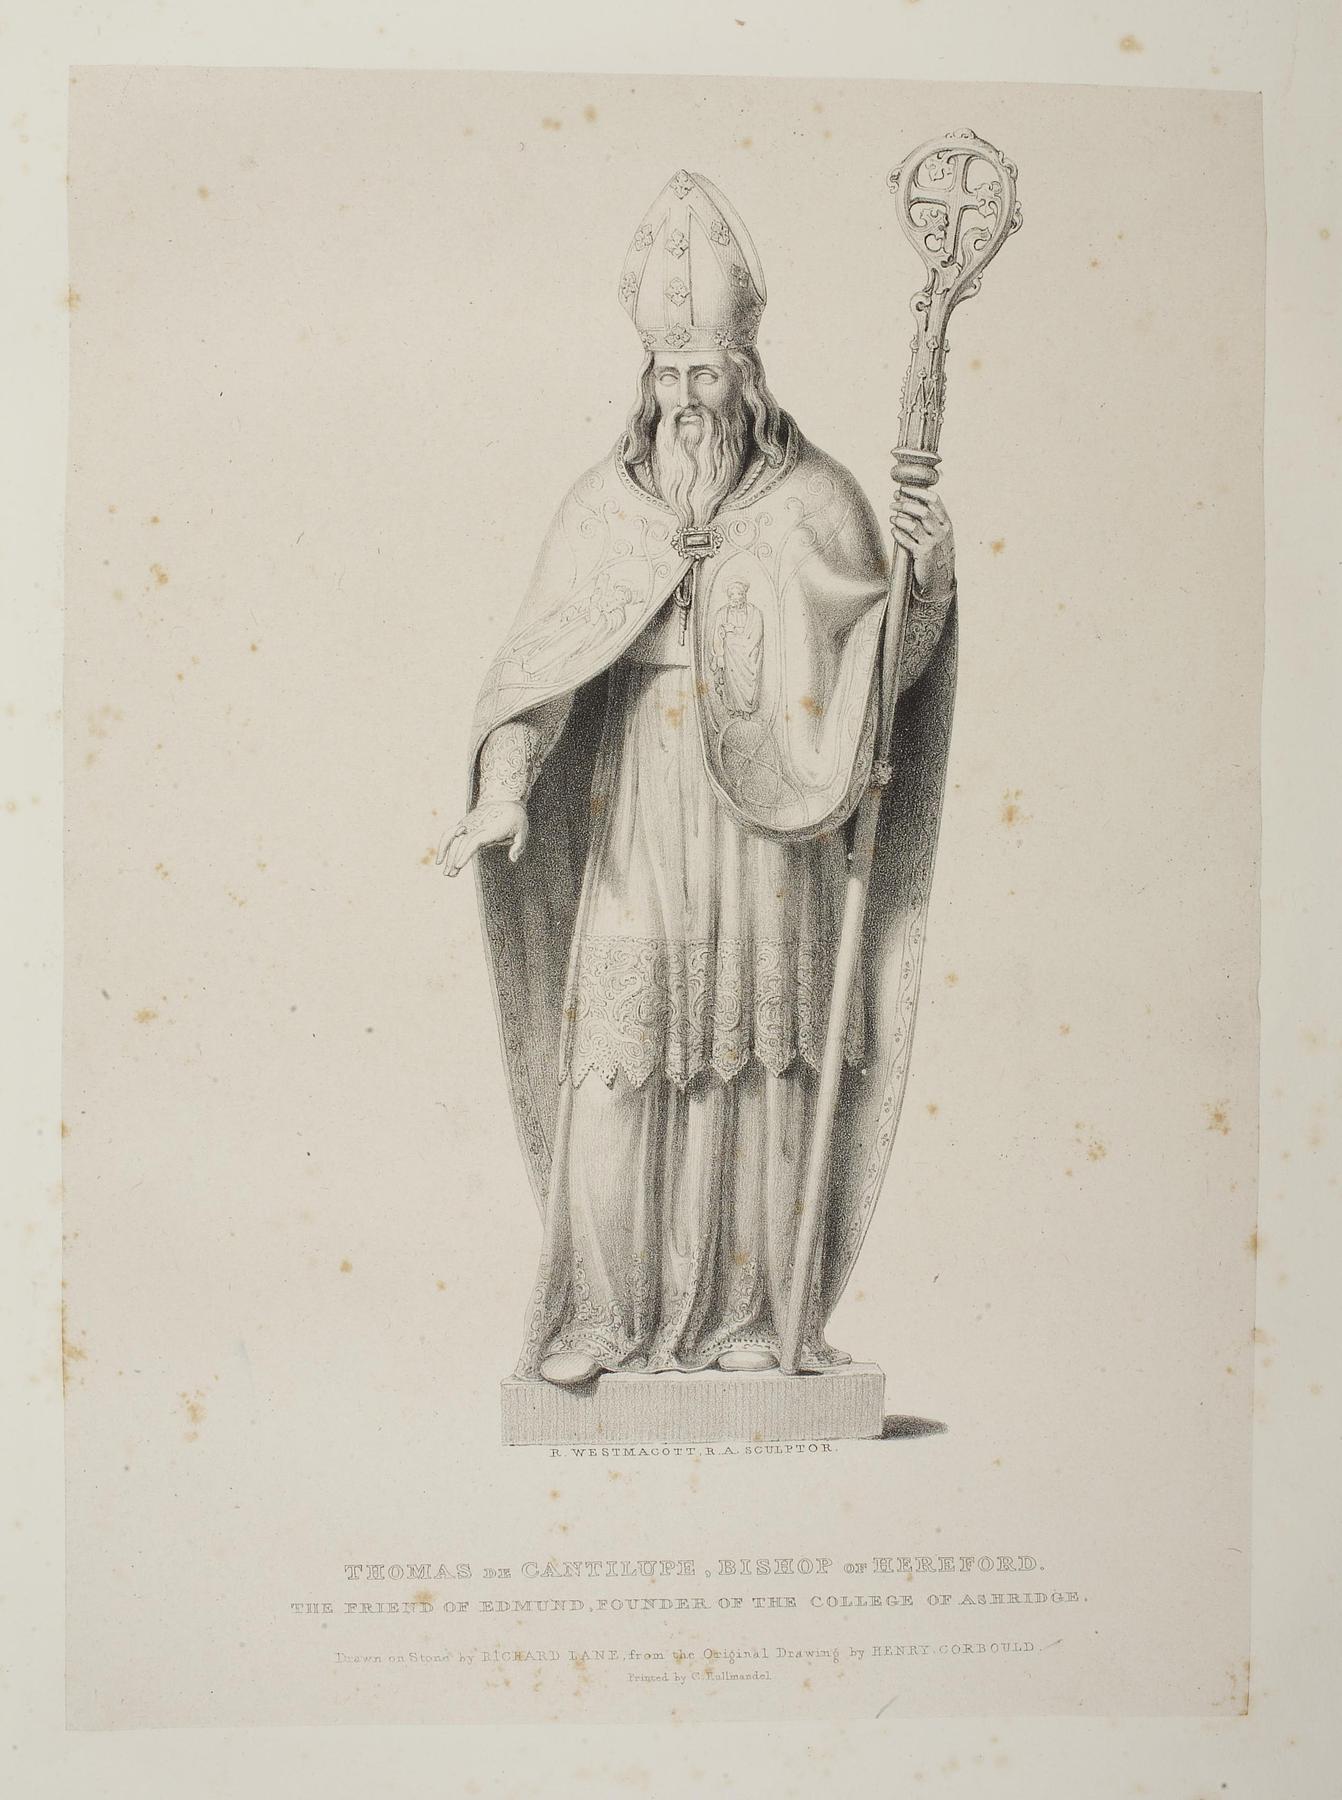 Thomas de Cantilupe Bishop af Herford, E1142e